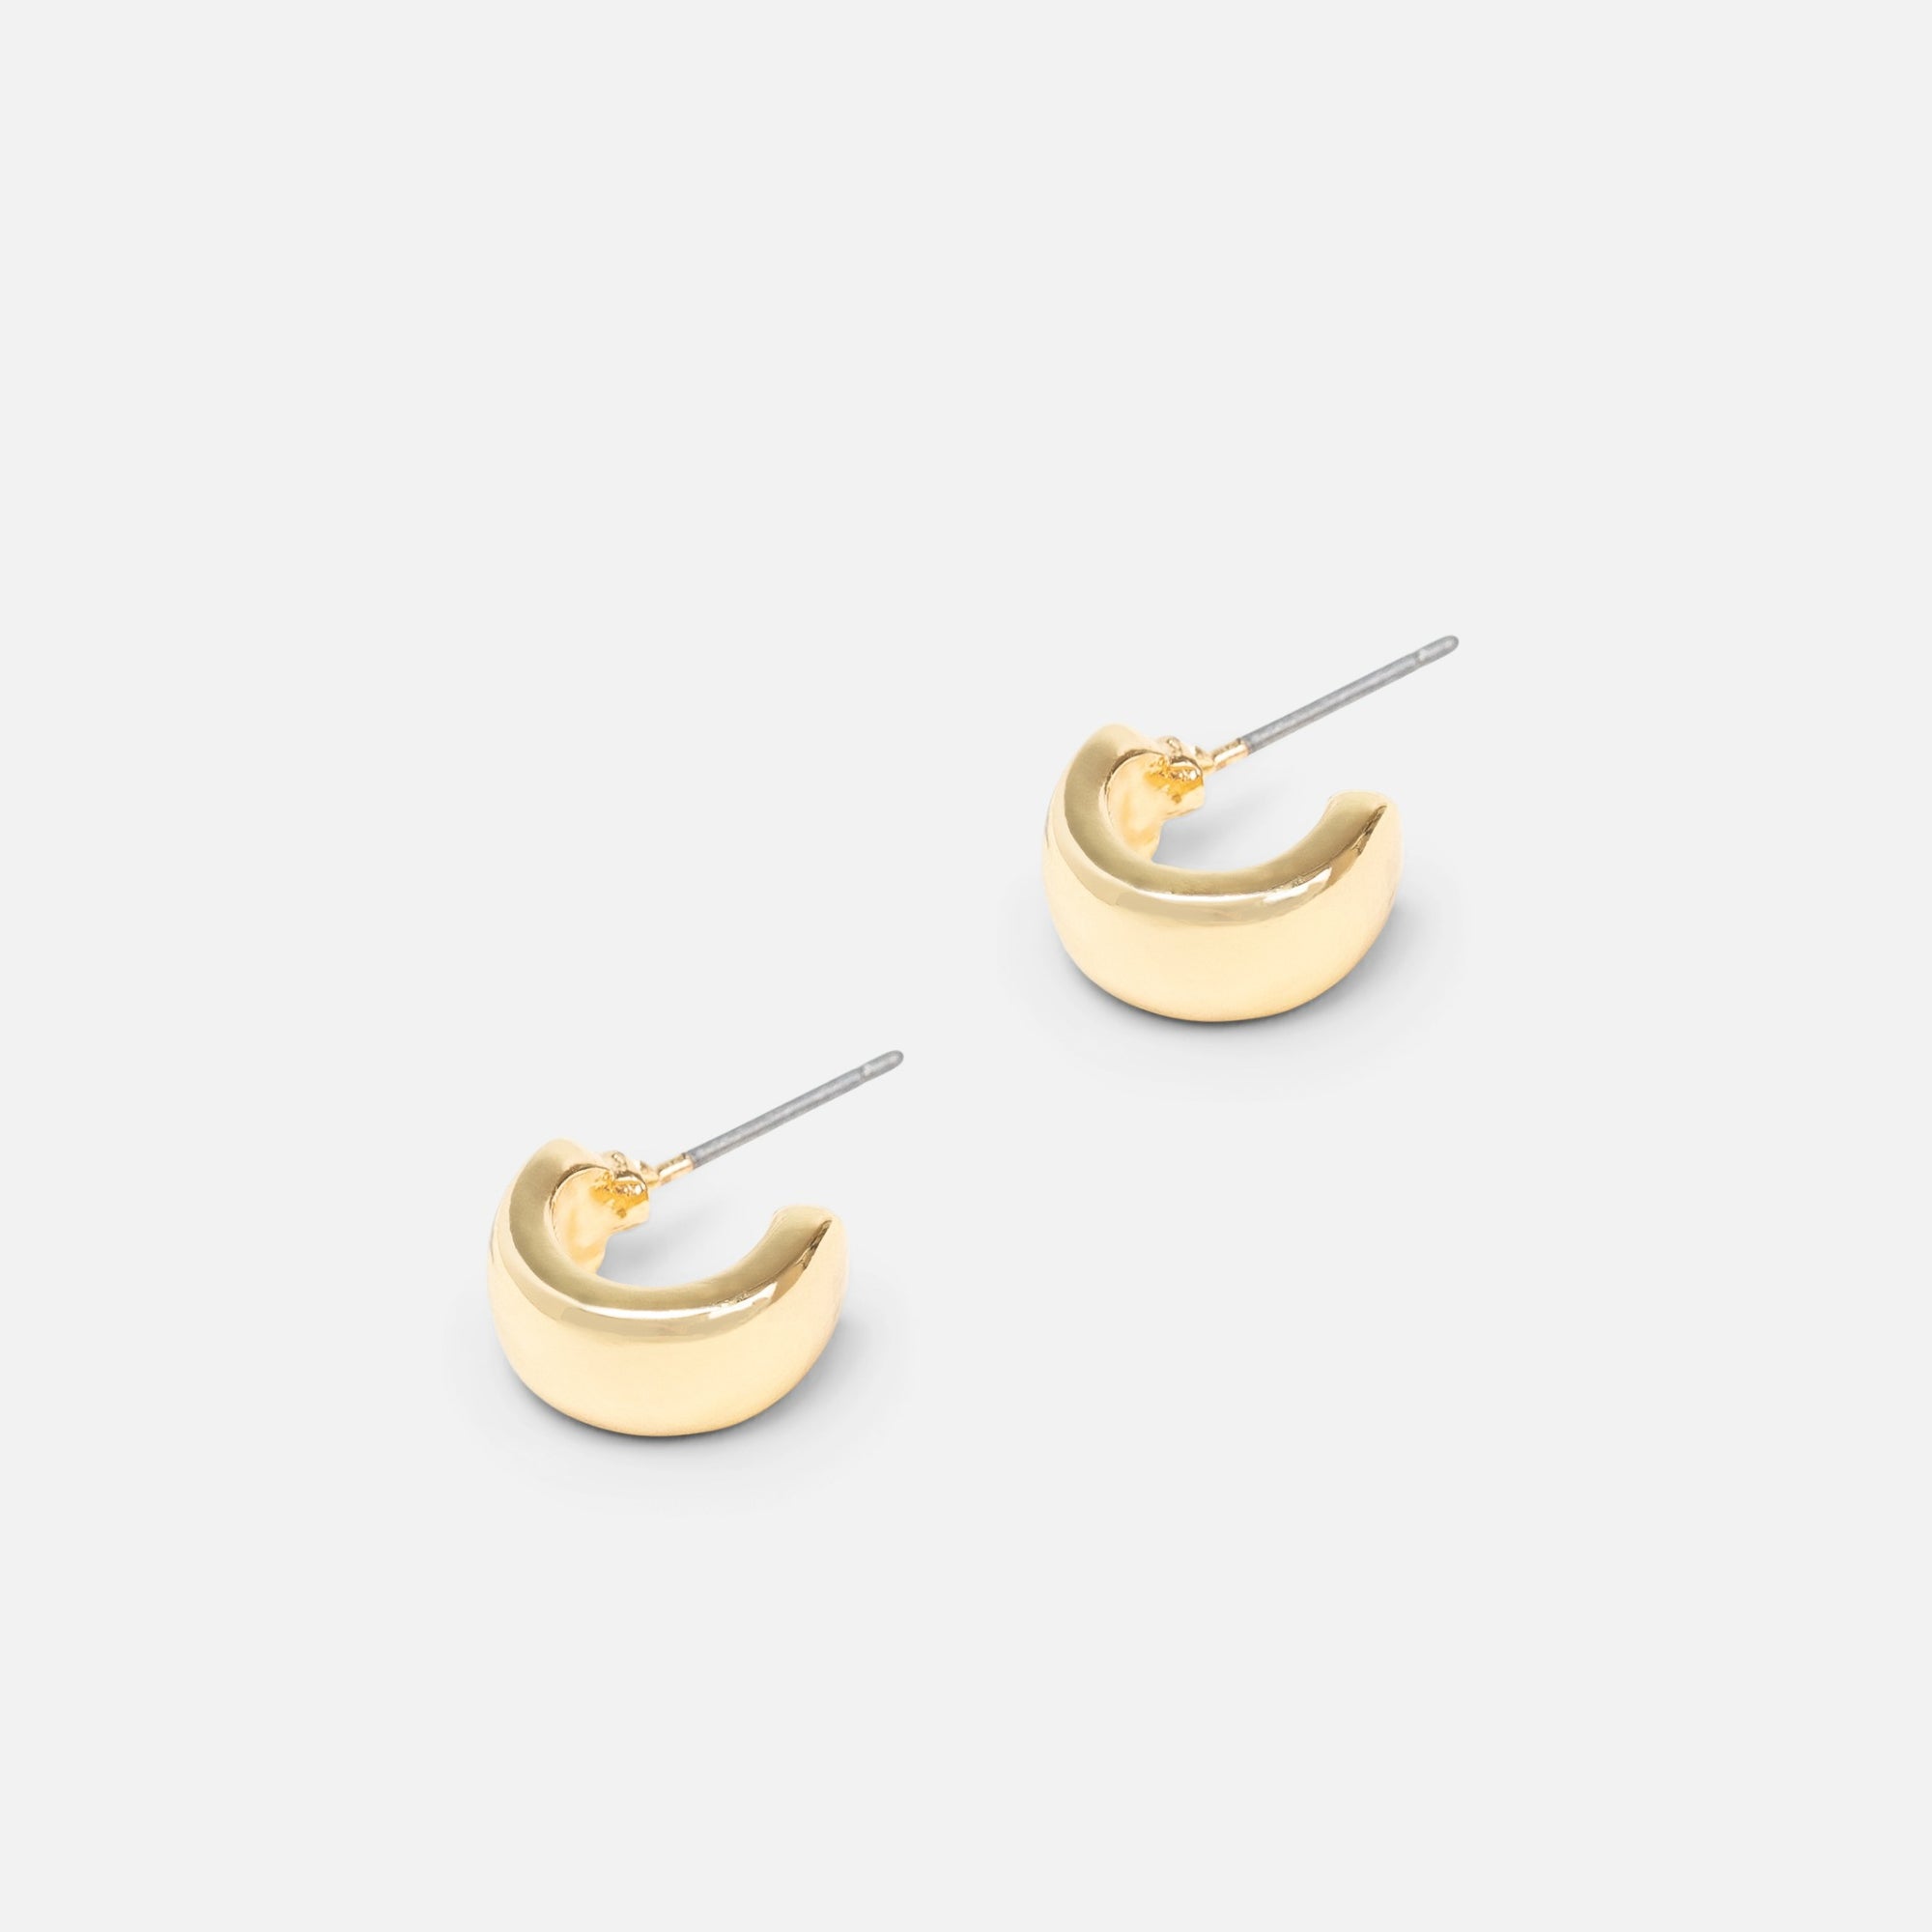 Ensembles de trois boucles d’oreilles anneaux dorés, argentés et grises